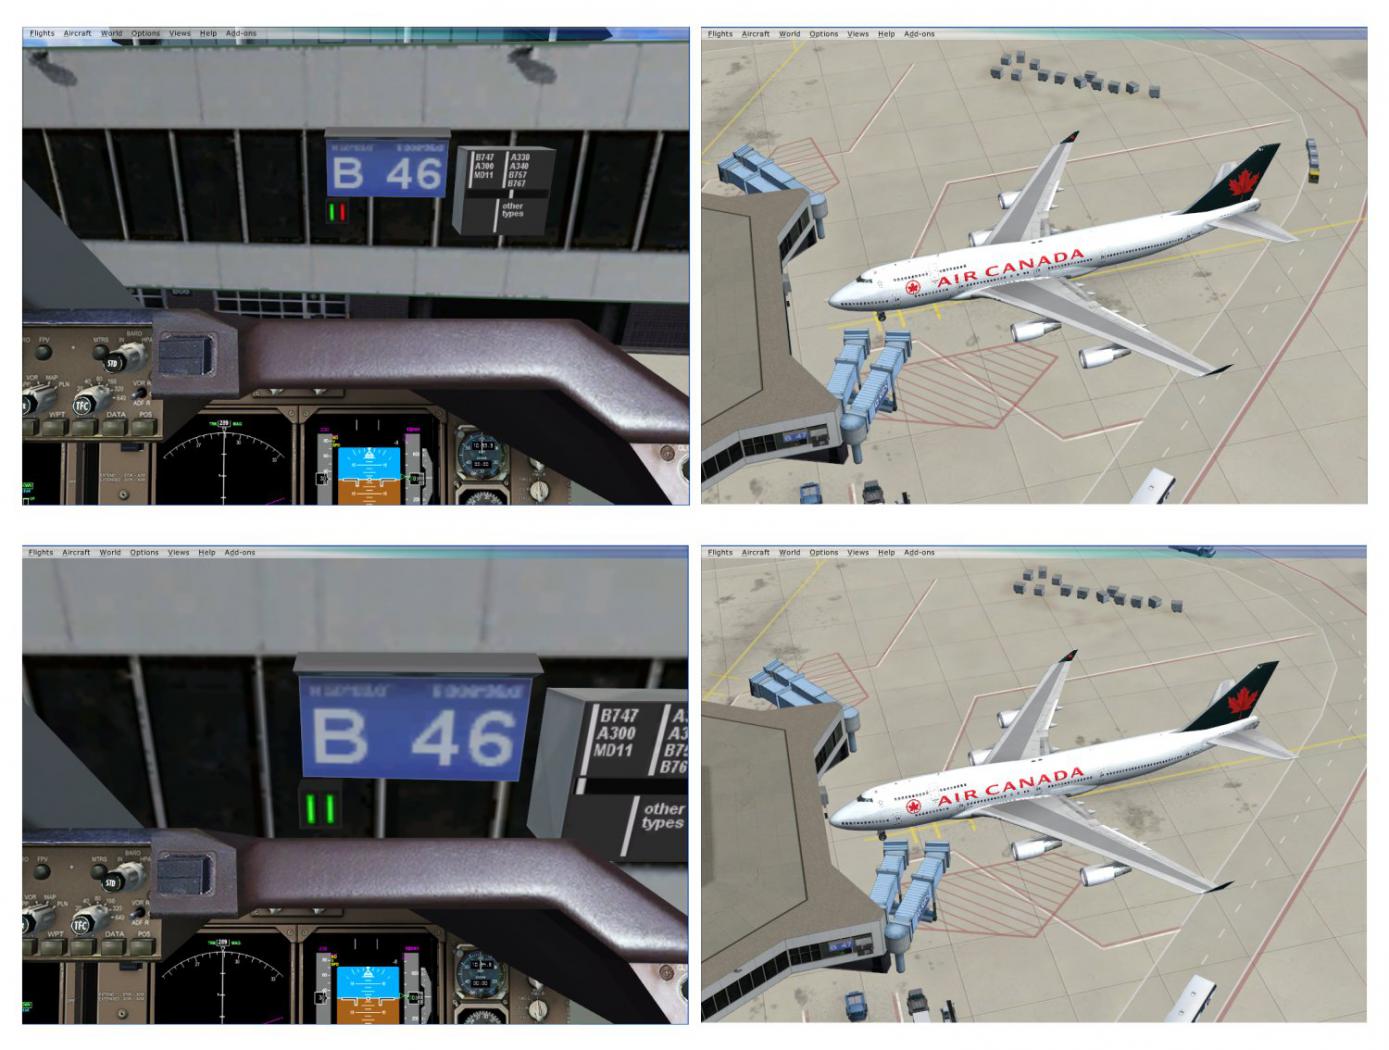 EDDF Gate B46 PAPA seems inaccurate - Aerosoft Mega Airports - AEROSOFT